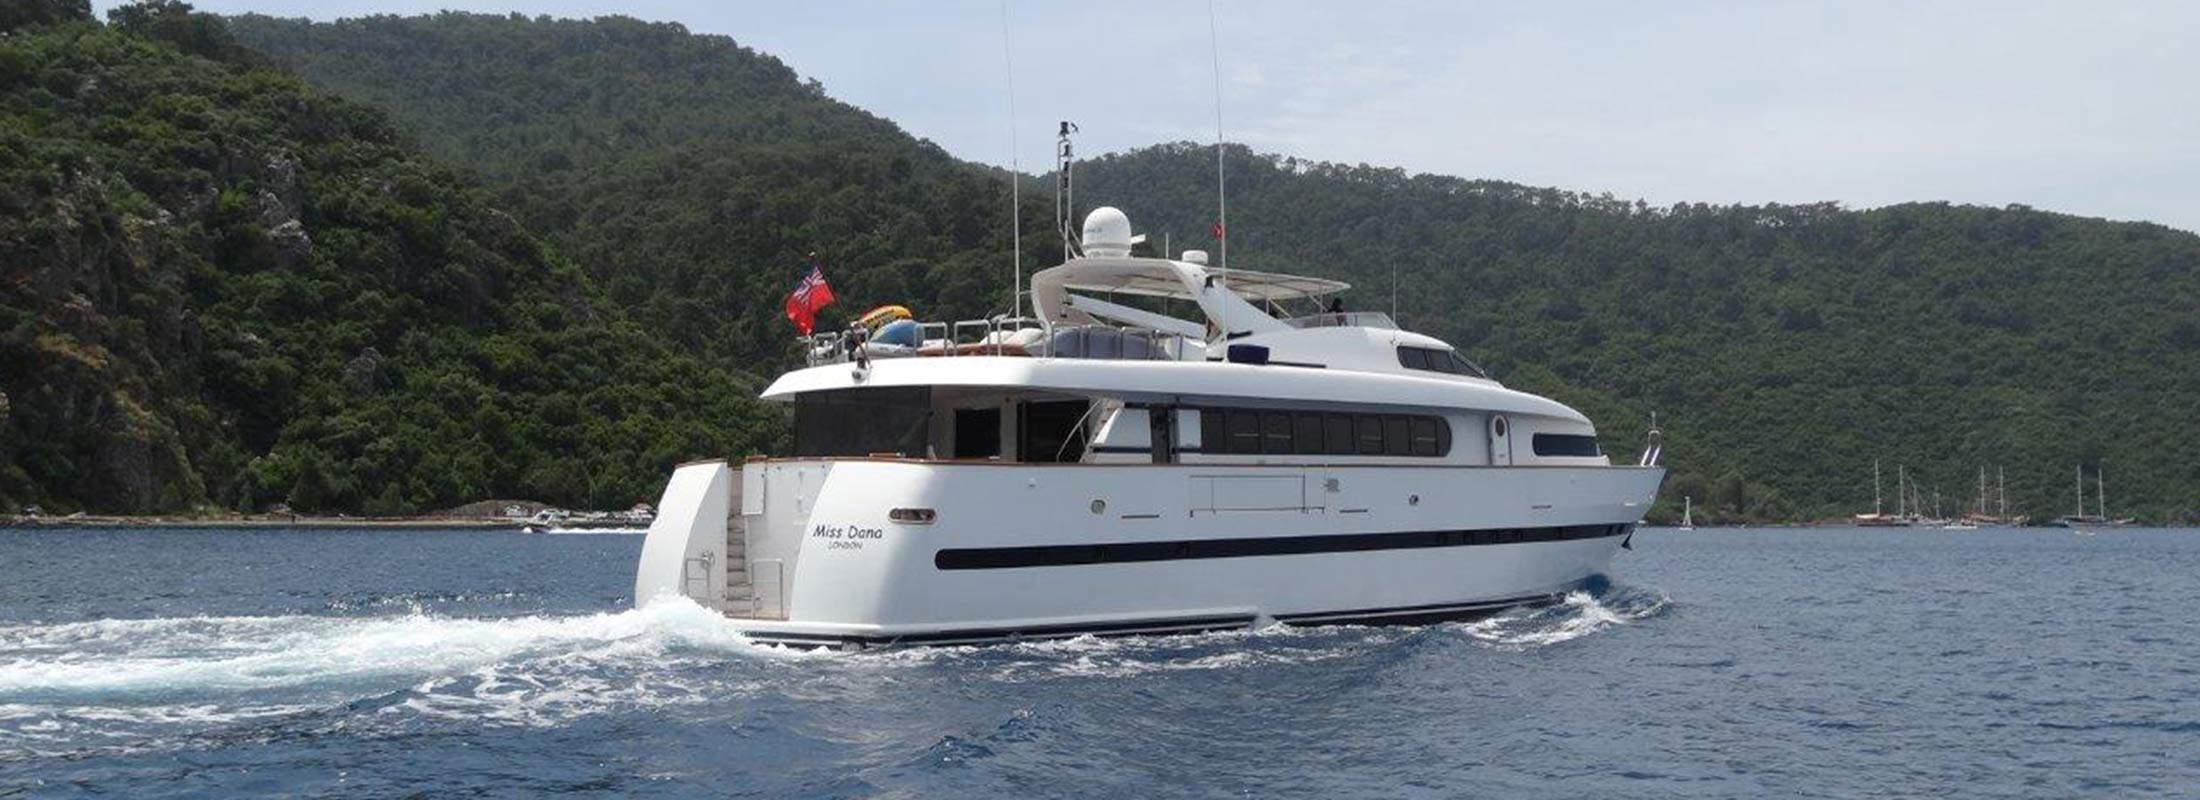 Dana Motor Yacht for Charter Mediterranean slider 2